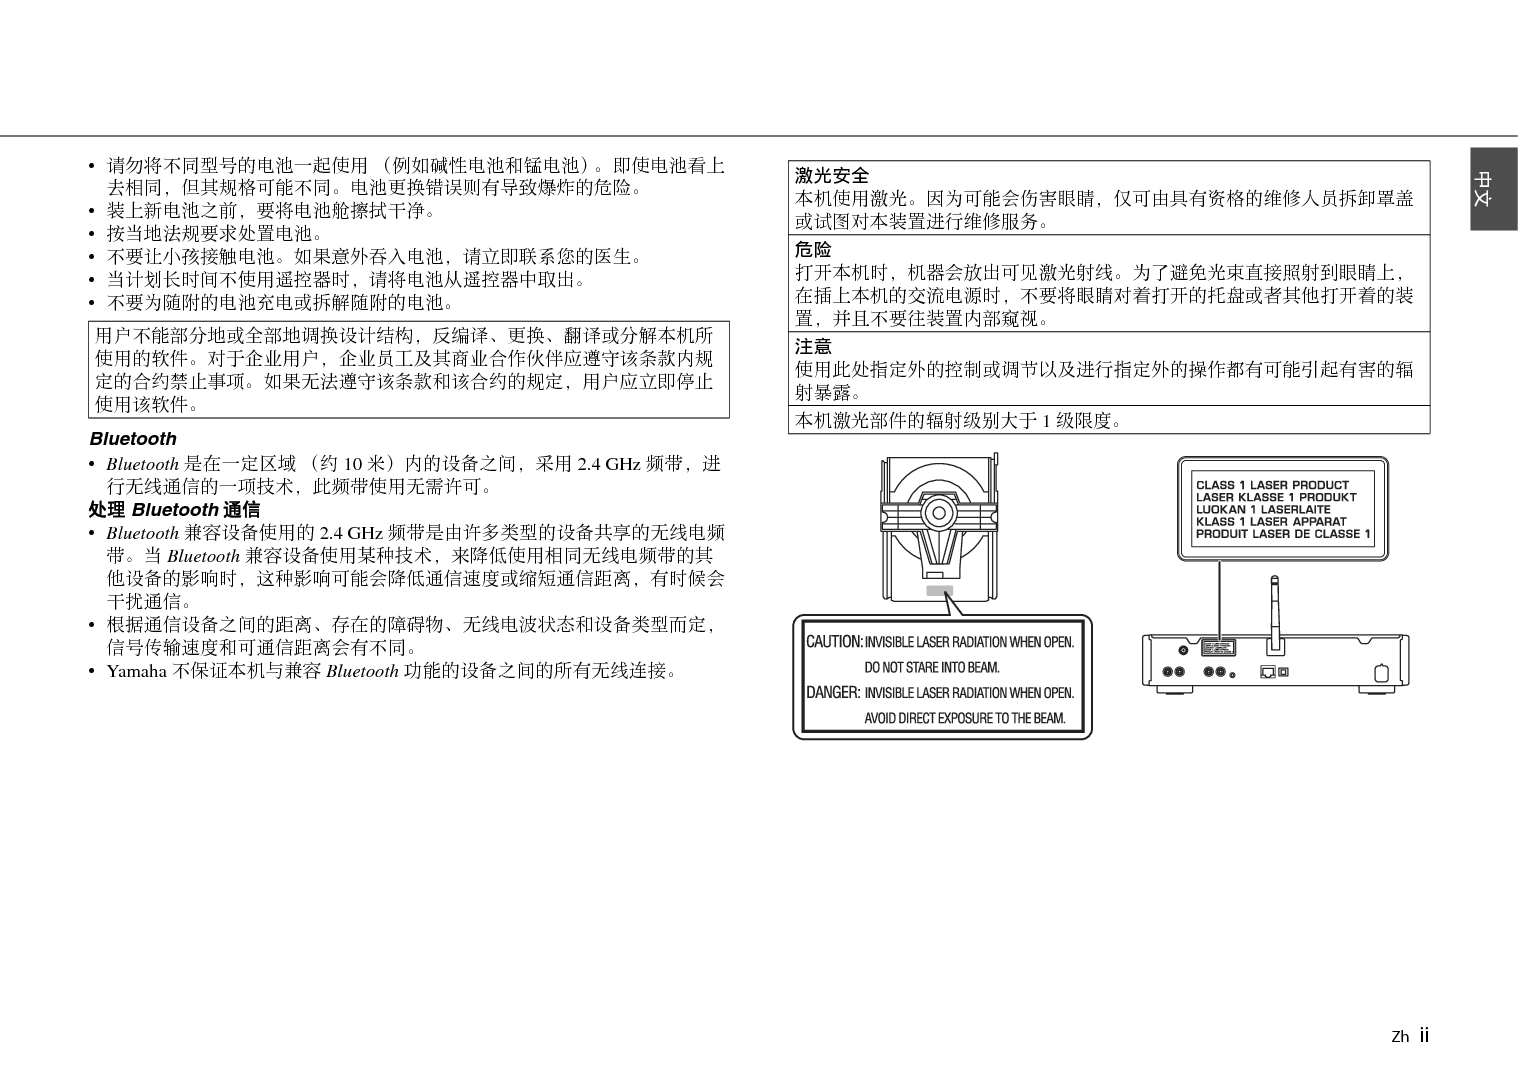 雅马哈 Yamaha CD-NT670 使用说明书 第2页